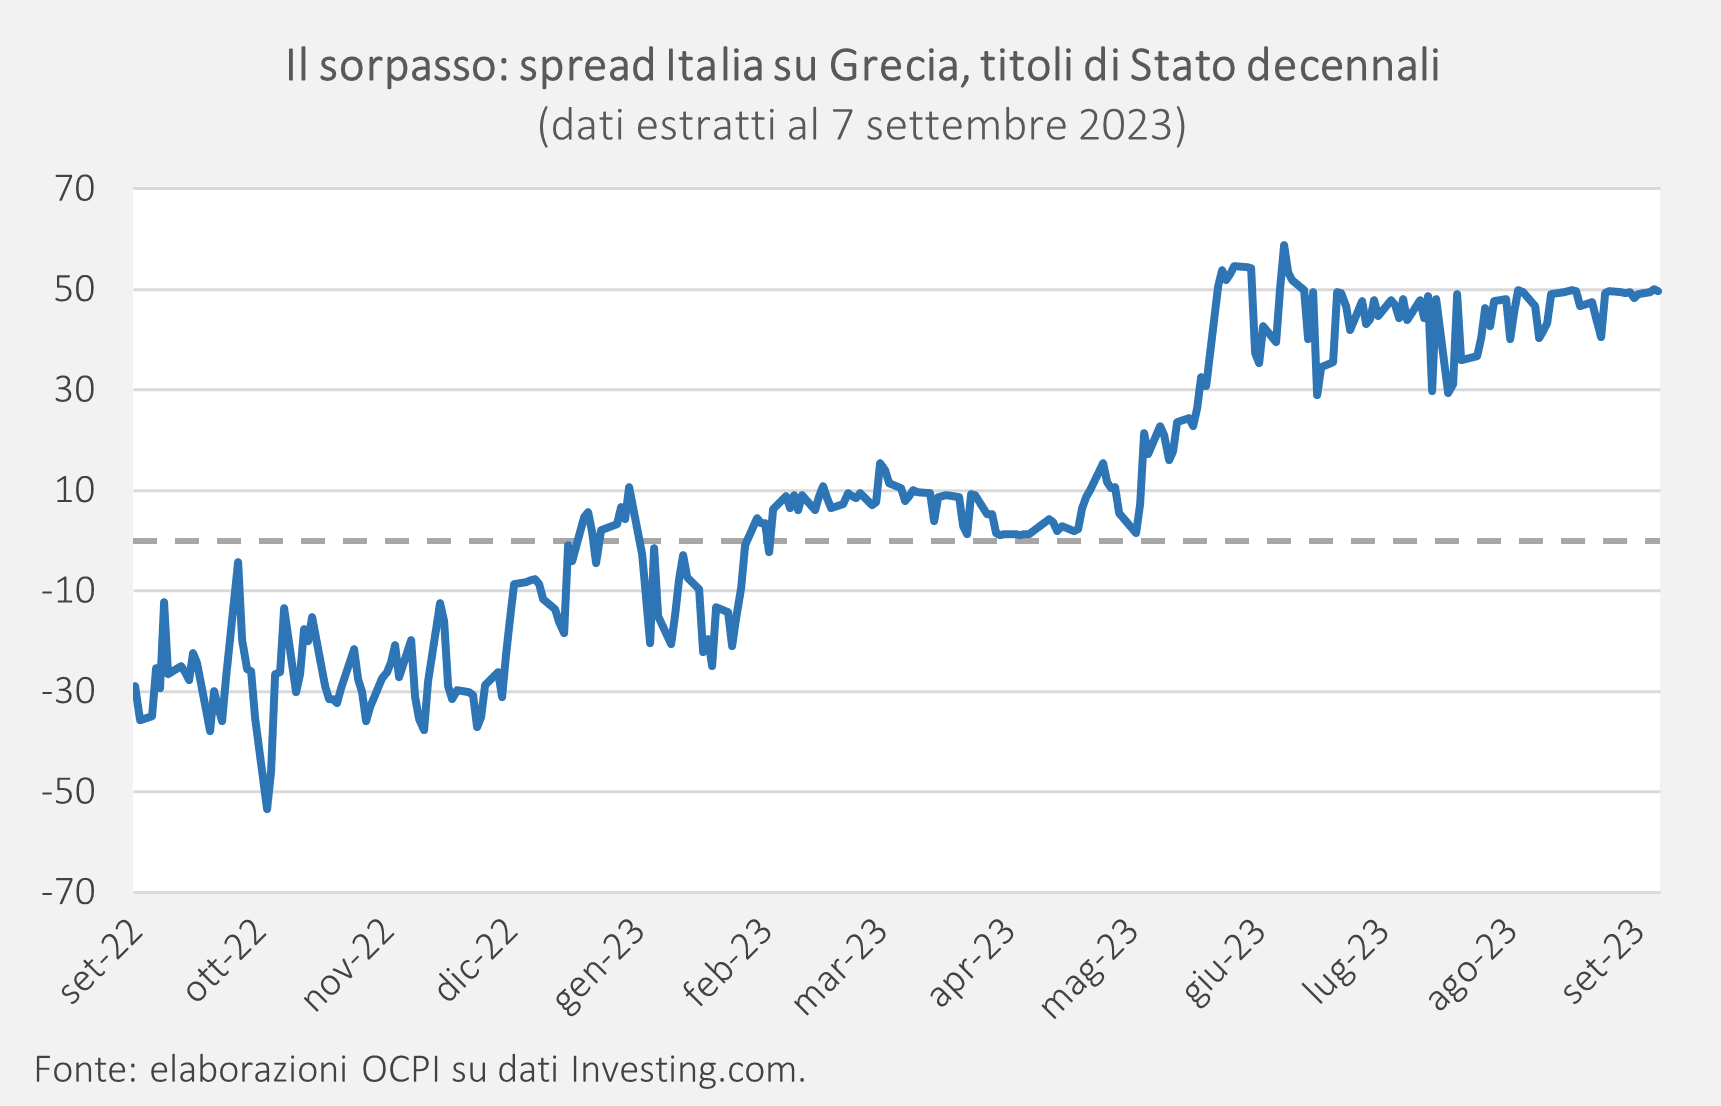 Spread Italia su Grecia, titoli di Stato decennali.